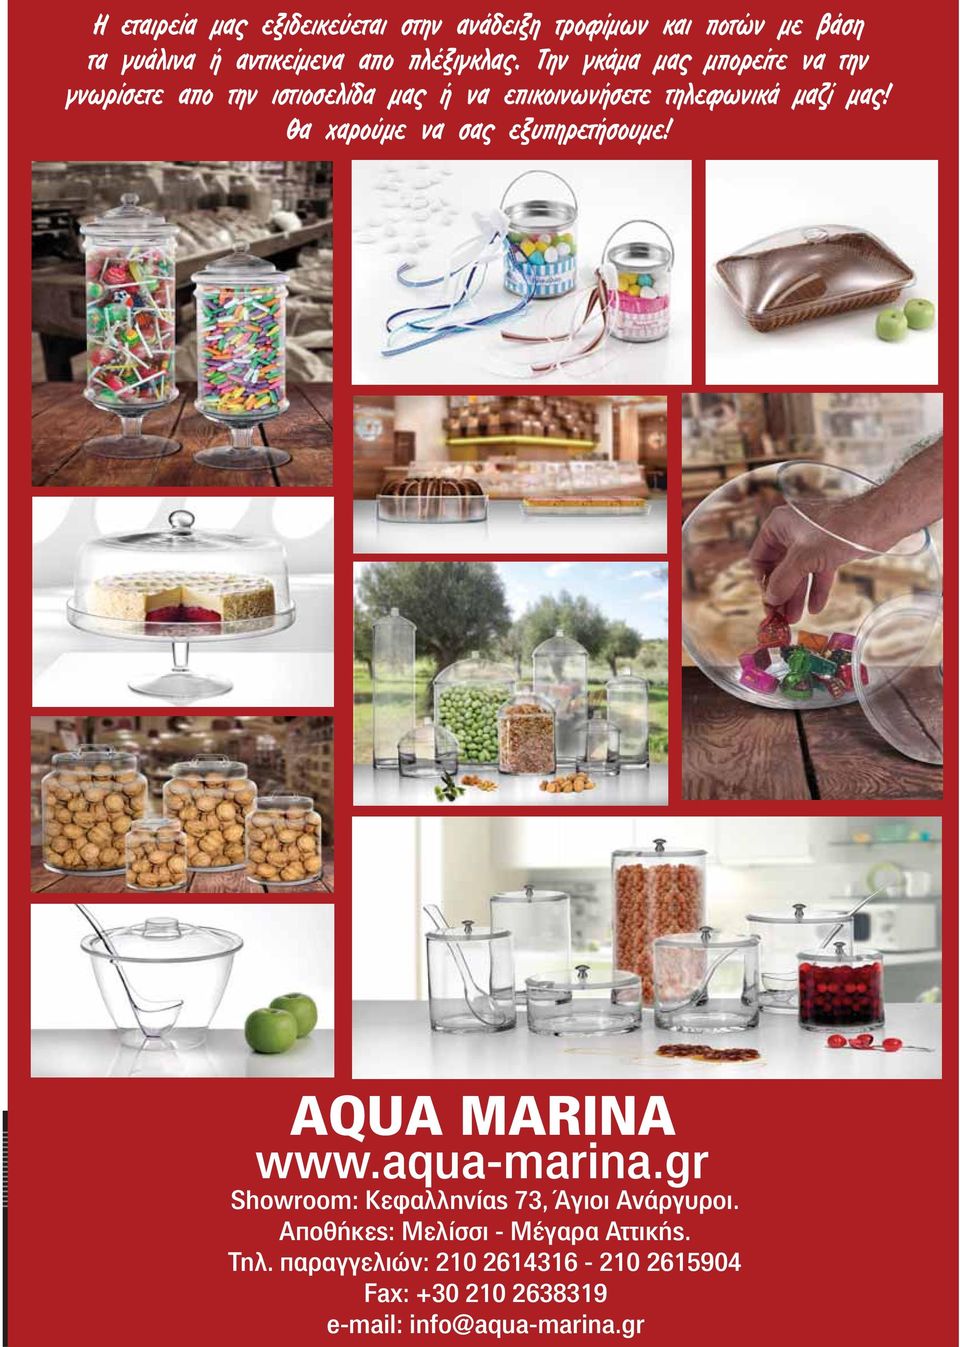 Θα χαρούμε να σας εξυπηρετήσουμε! AQUA MARINA www.aqua-marina.gr Showroom: Κεφαλληνίας 73, Άγιοι Ανάργυροι.